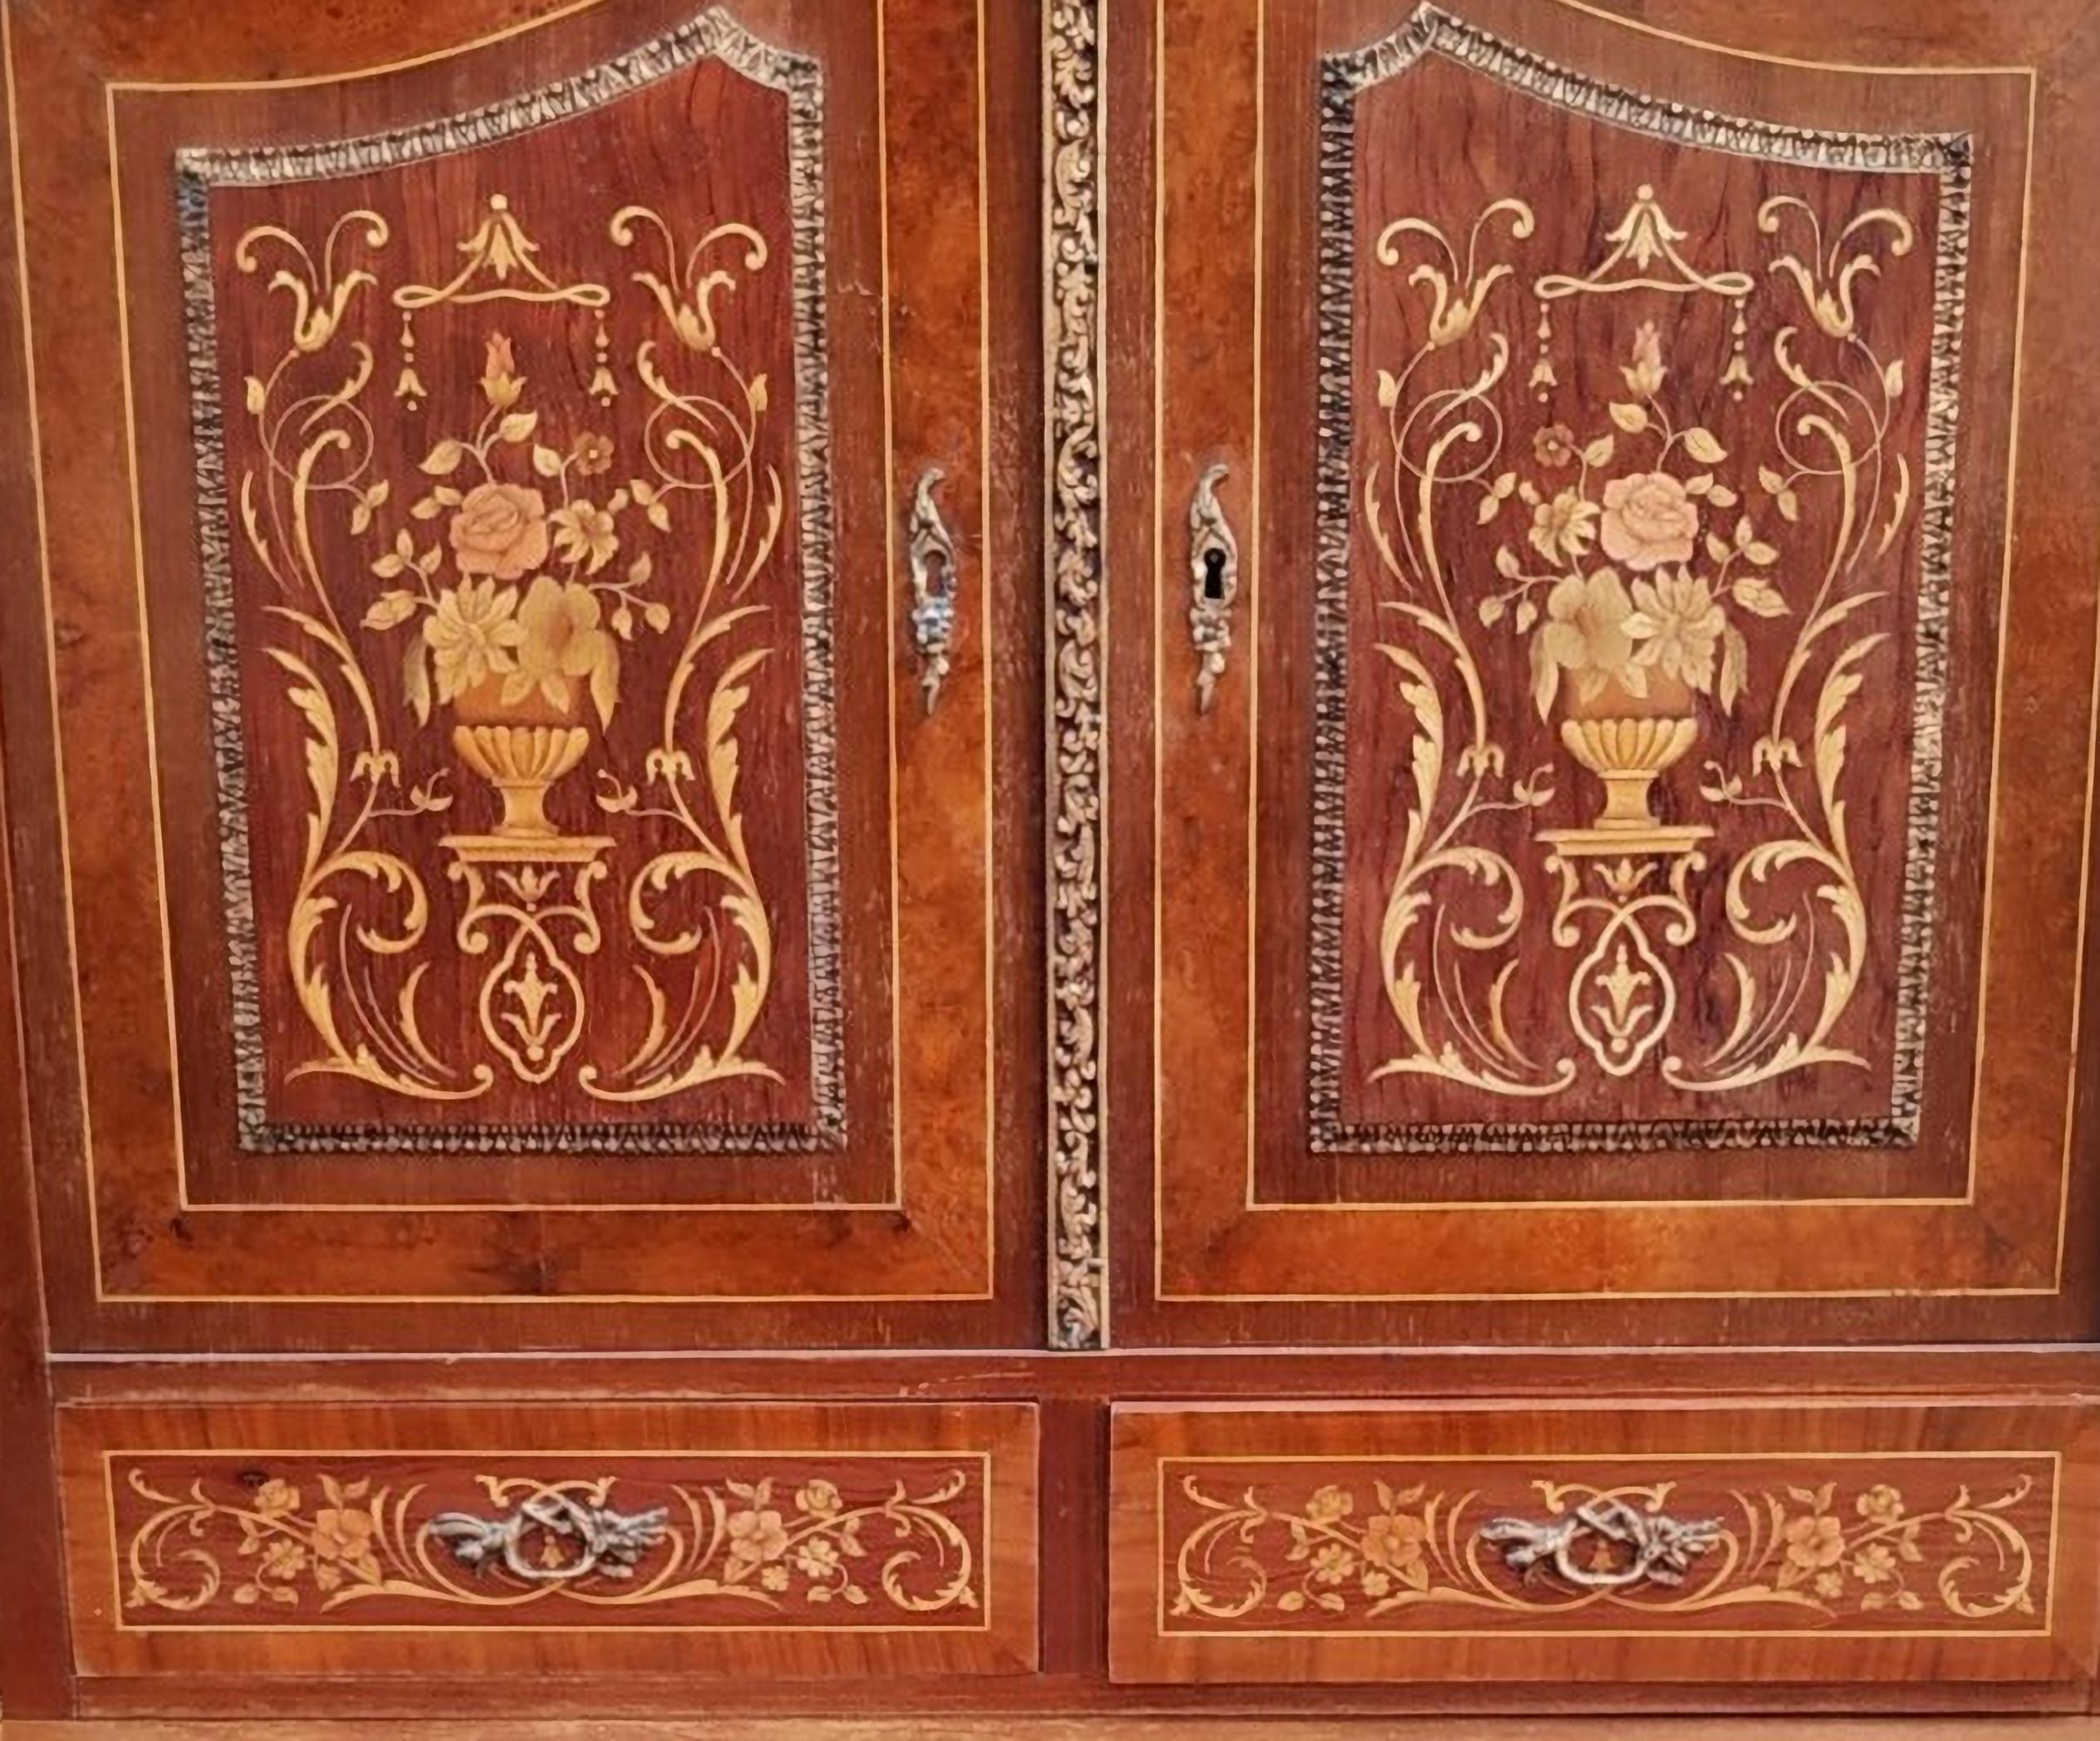 Secrétaire avec hauteur

Français, style Louis XV,
19ème siècle
Différents bois avec des applications en bronze.
Signes d'utilisation.
Dim. : 151 x 81 x 55 cm
Bonnes conditions.